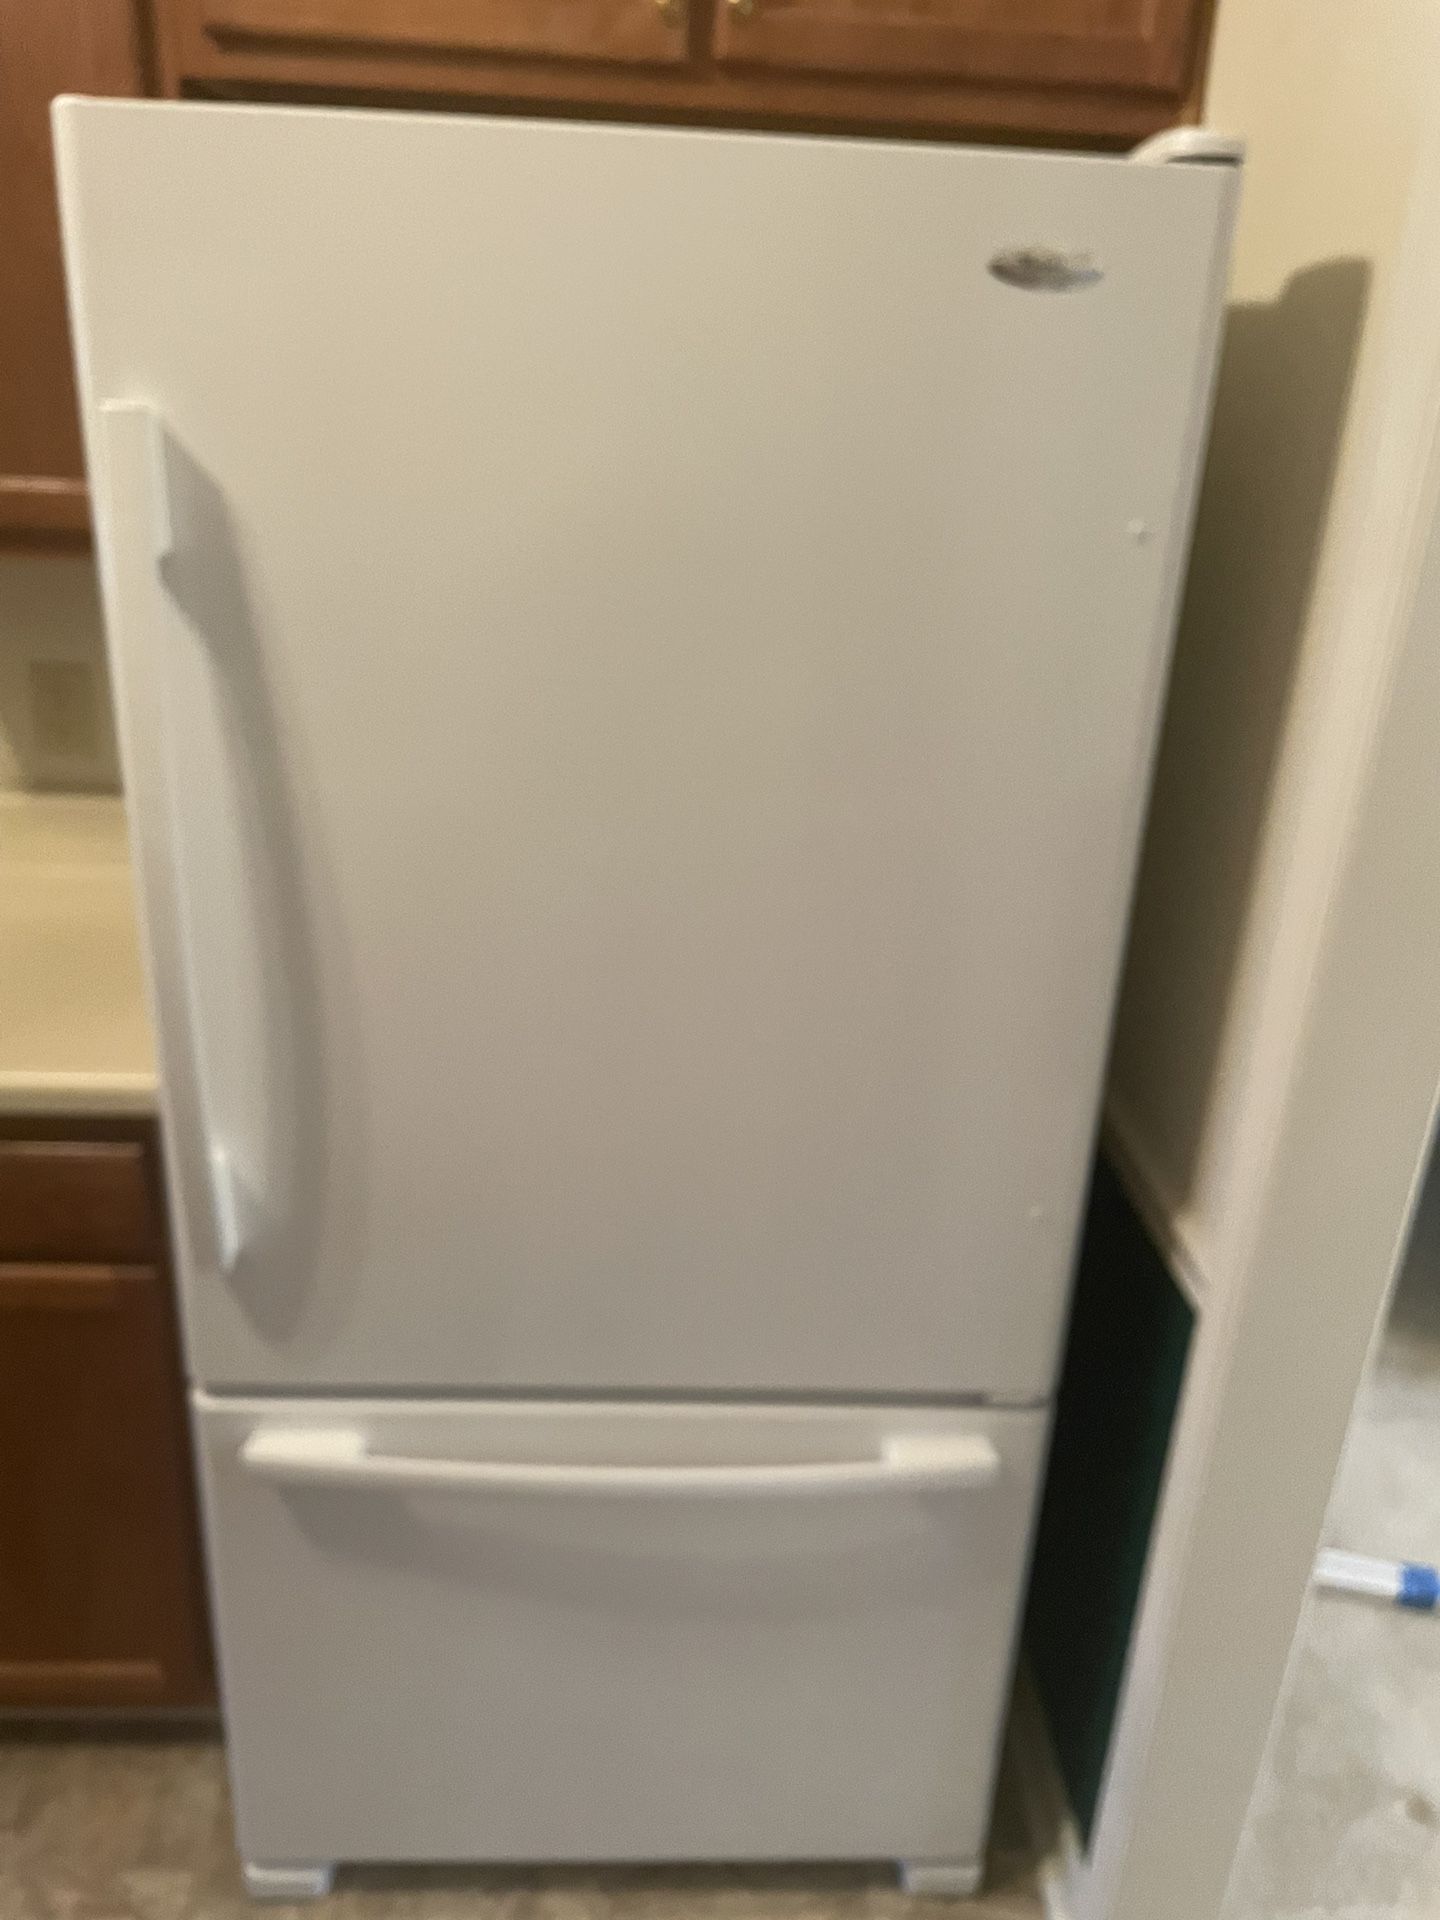 Whirlpool refrigerator Like New